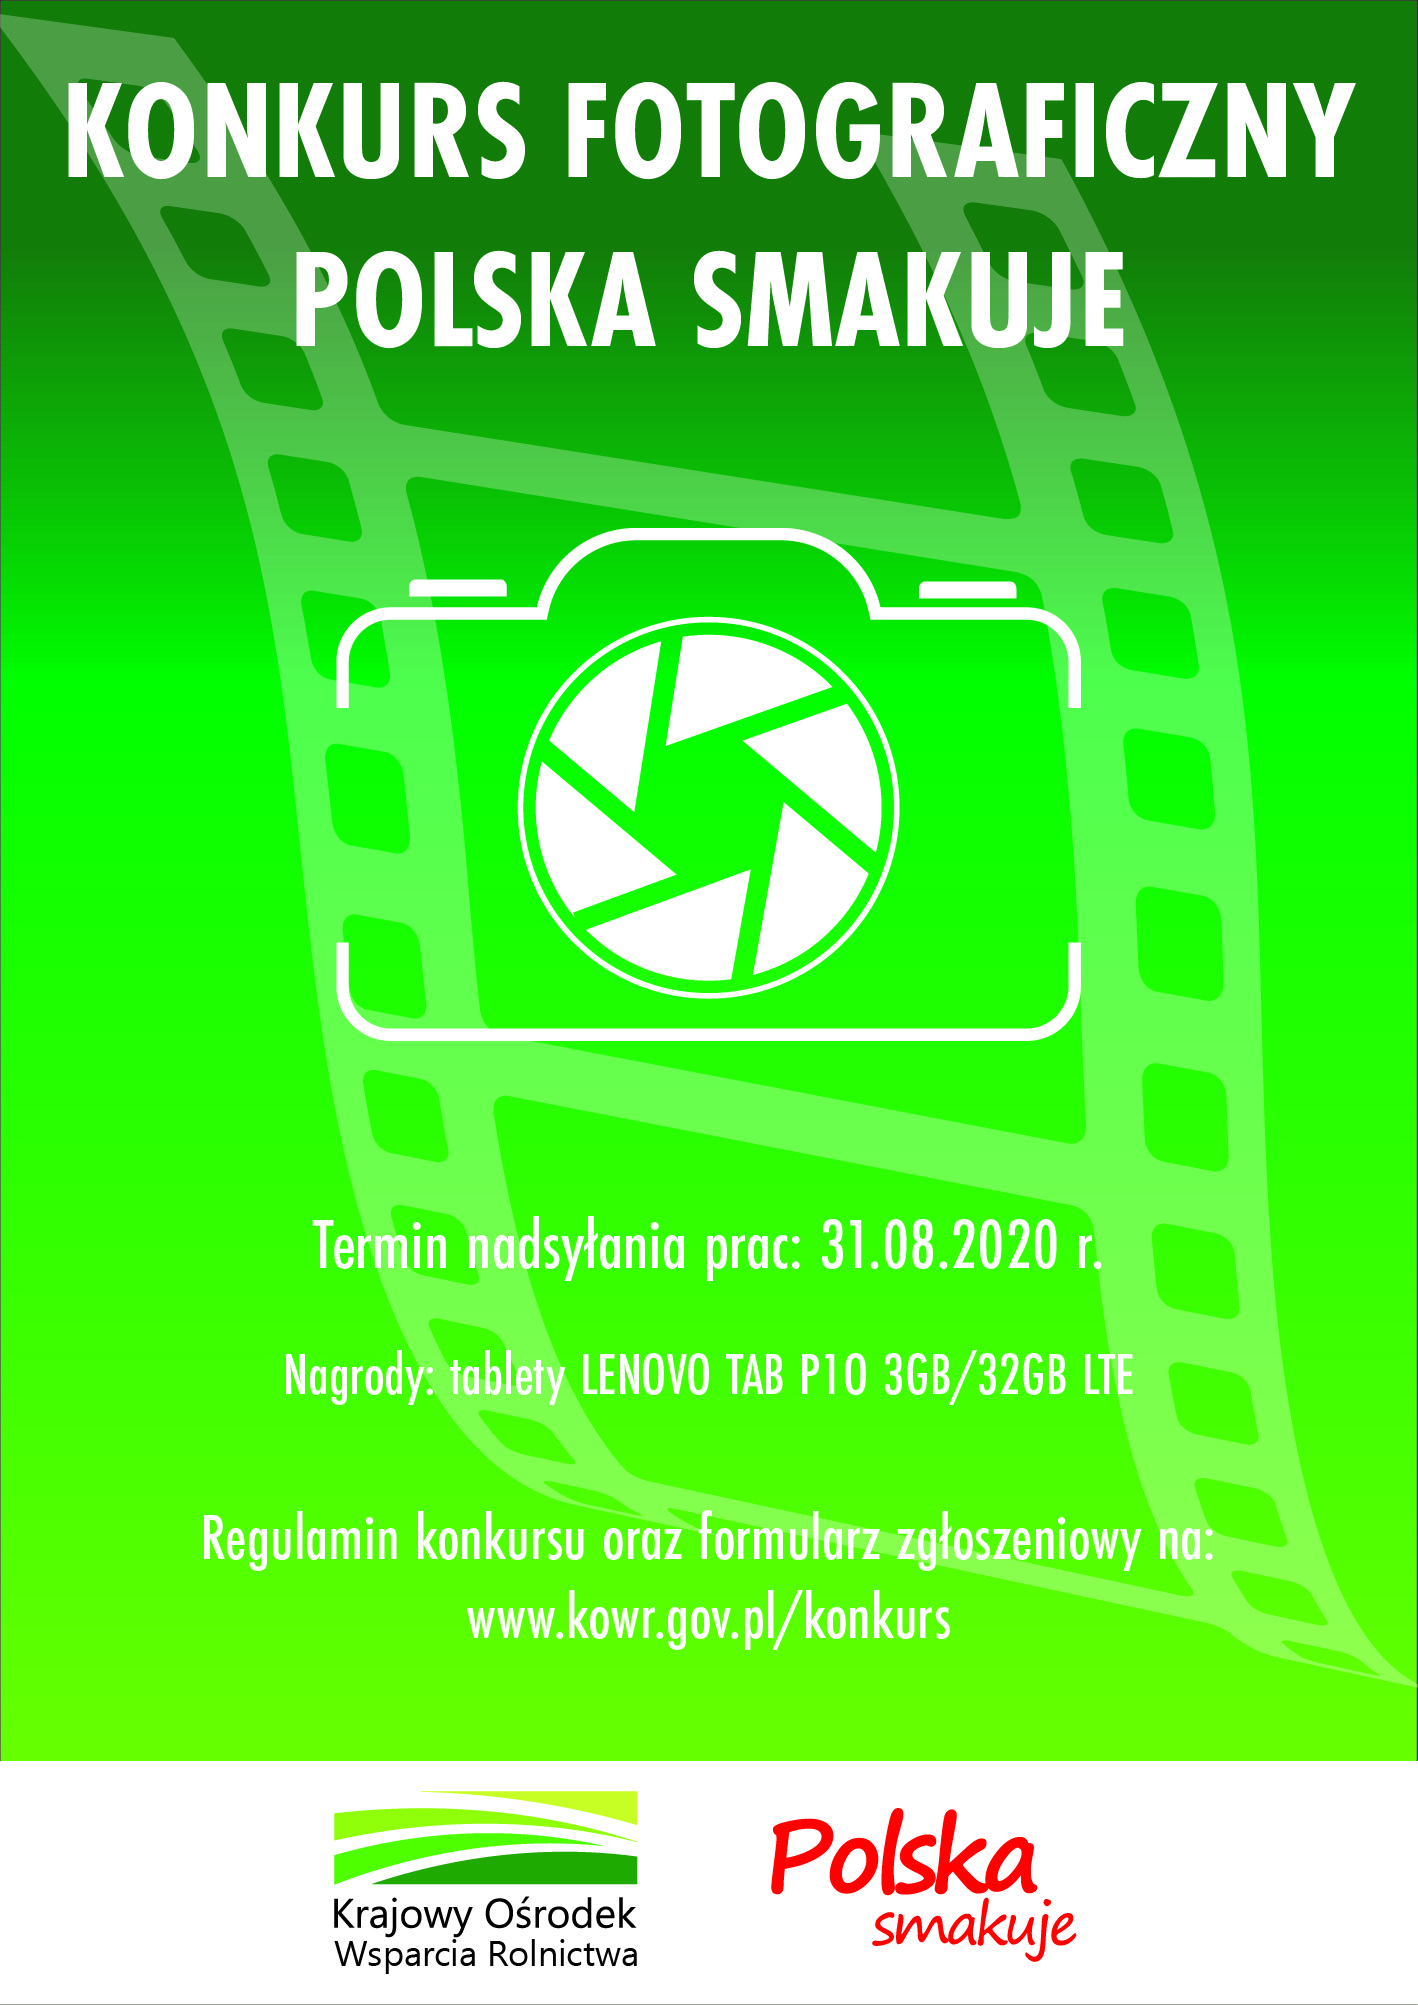 Konkurs fotograficzny polska smakuje. Termin nadsyłania prac 31.08.2020. regulamin oraz formularz zgłoszeniowy dostępny na stronie www.kowr.gov.pl/konkusr